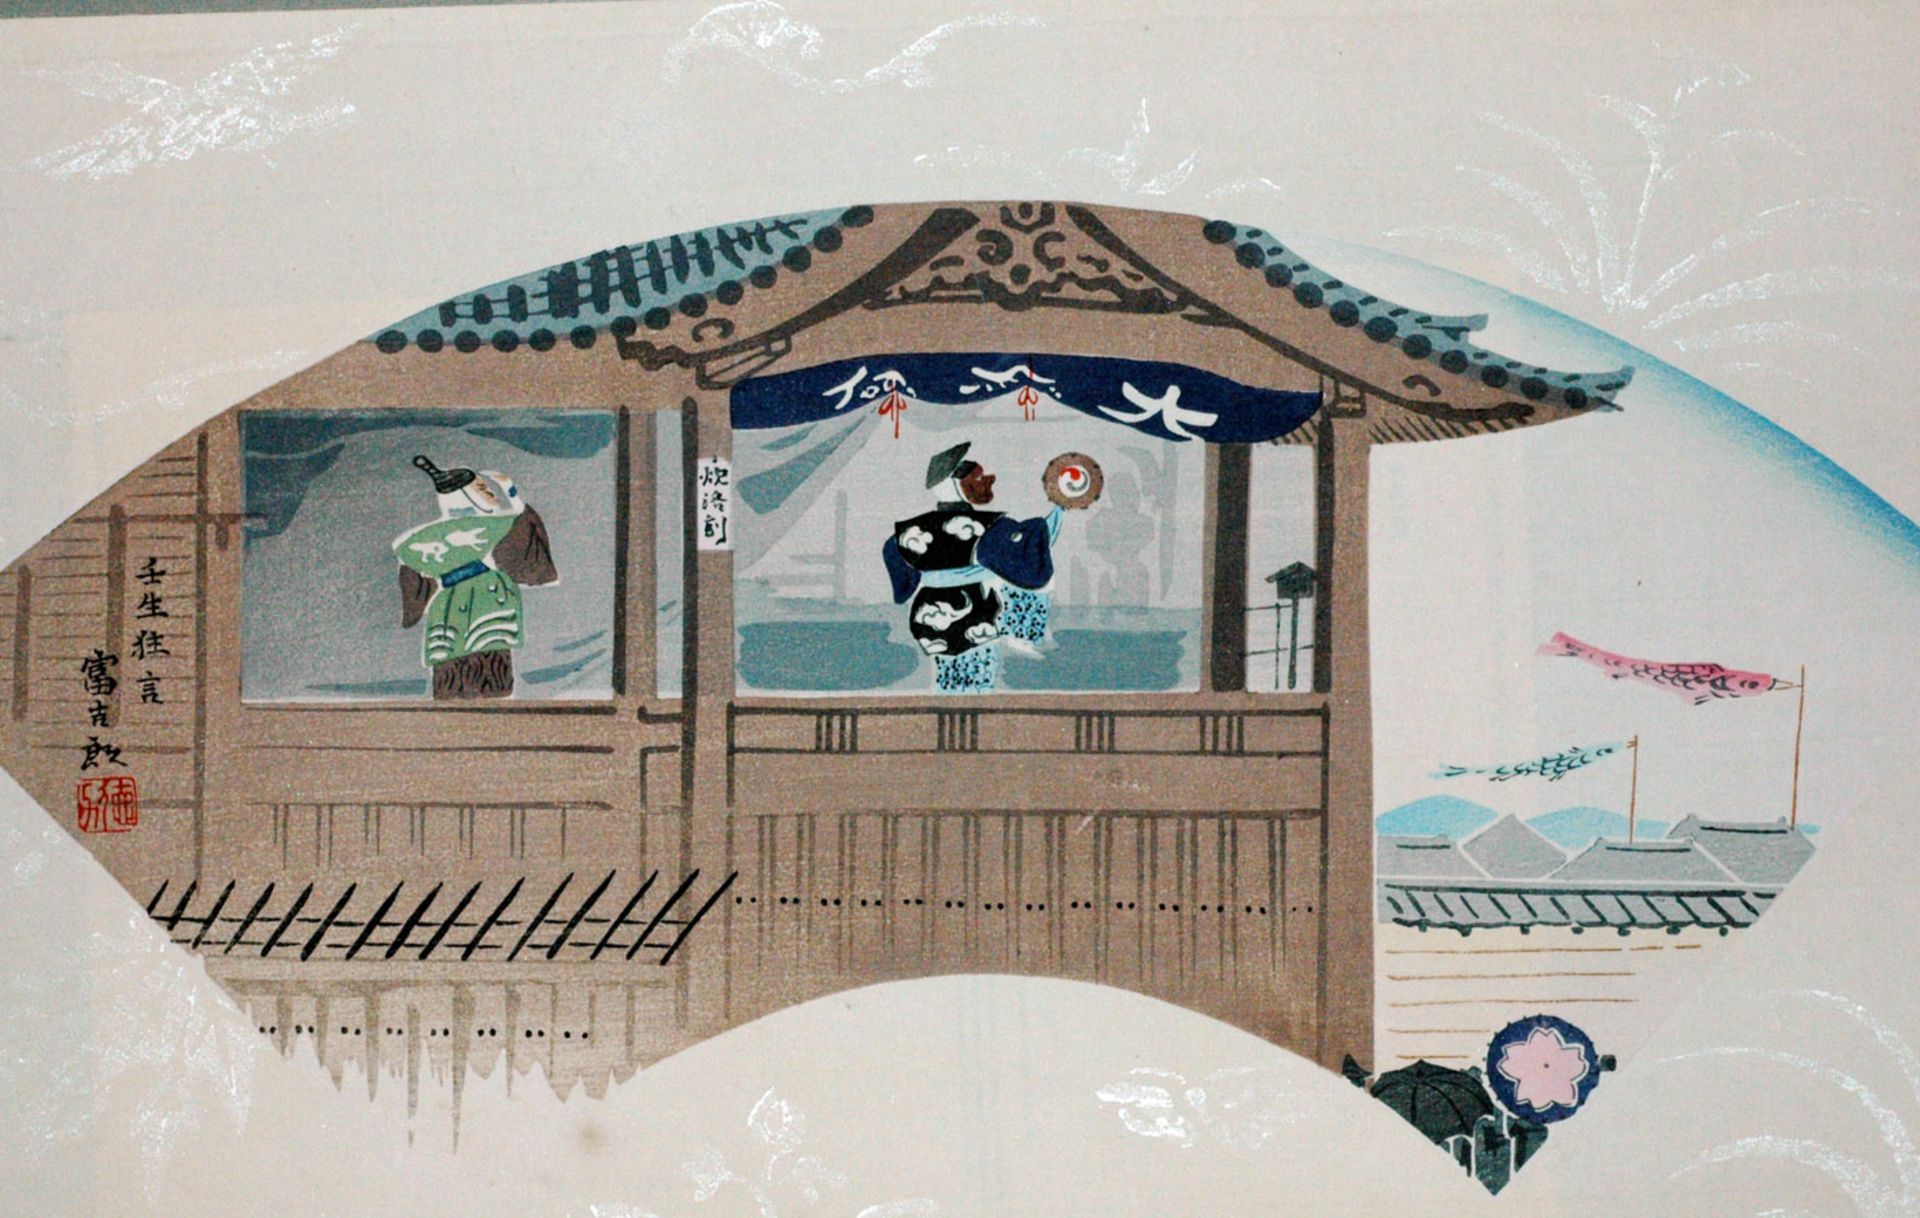 TOKURIKI TOMIKICHIRO (1902 - 2000)
Original-Sosaku-Hanga. Japan, um 1930UCHIWA-E (Fächerbild)